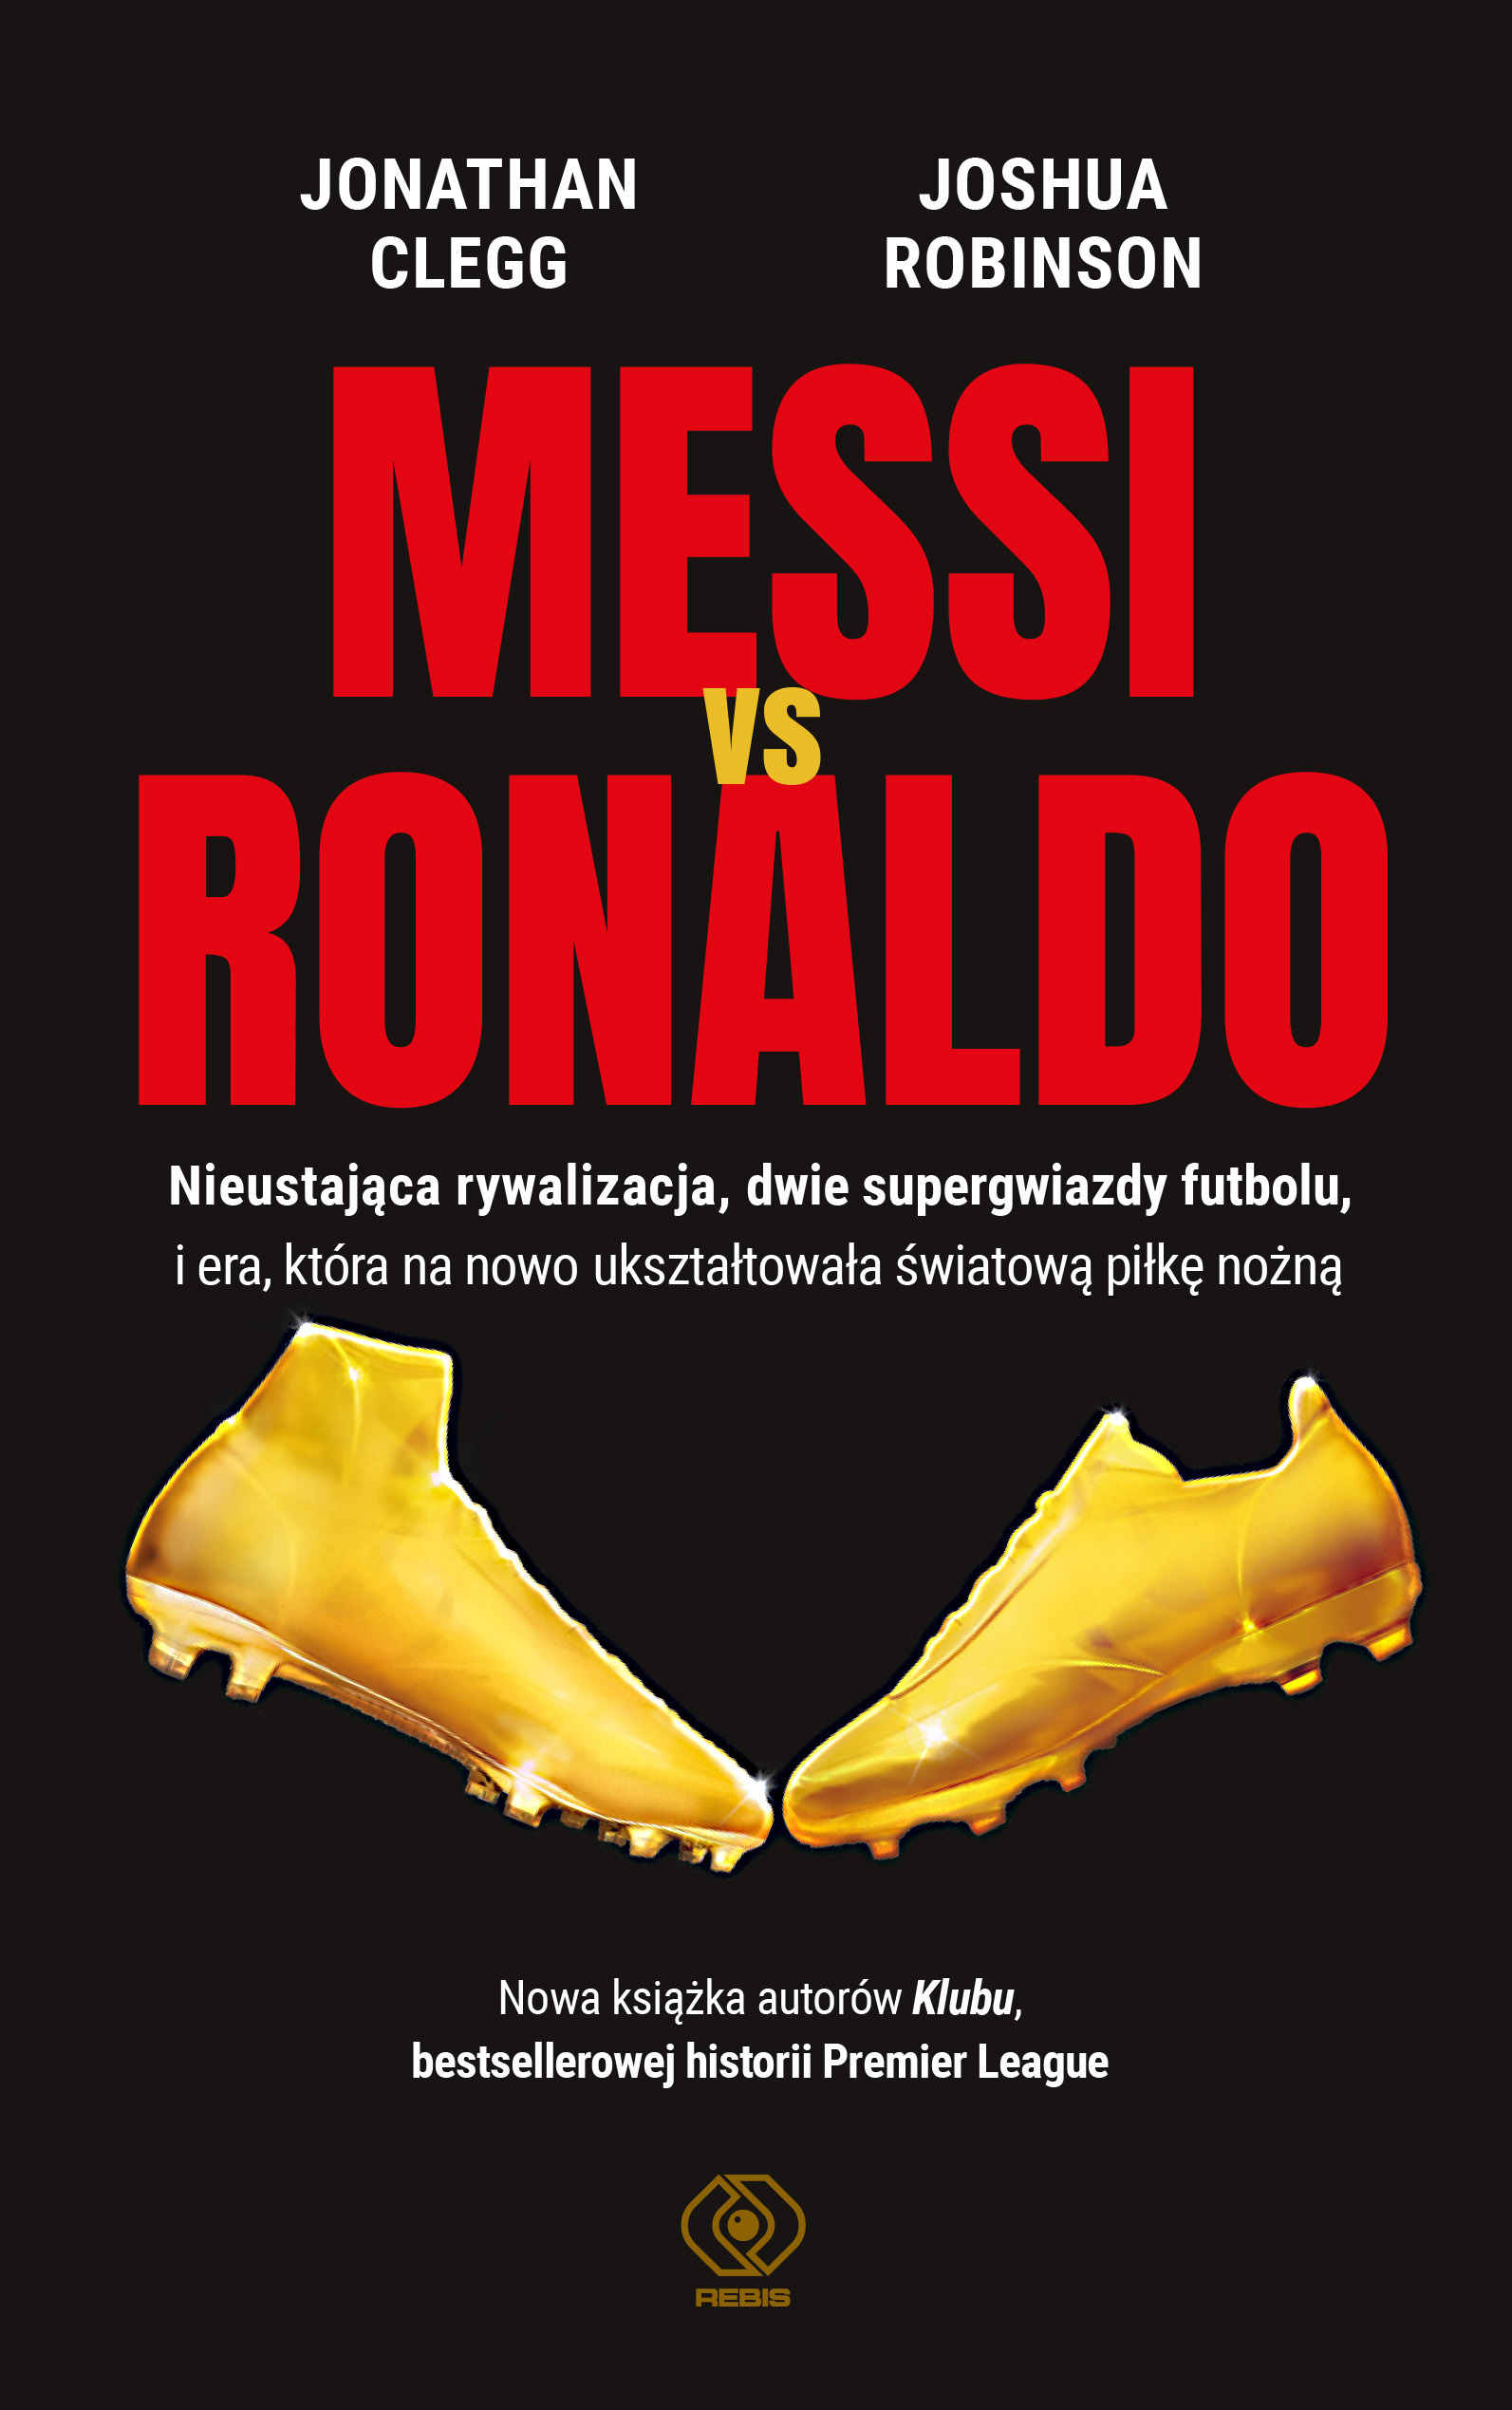 Messi vs. Ronaldo Jonathana Clegga i Joshua'y Robinsona - nieustająca rywalizacja